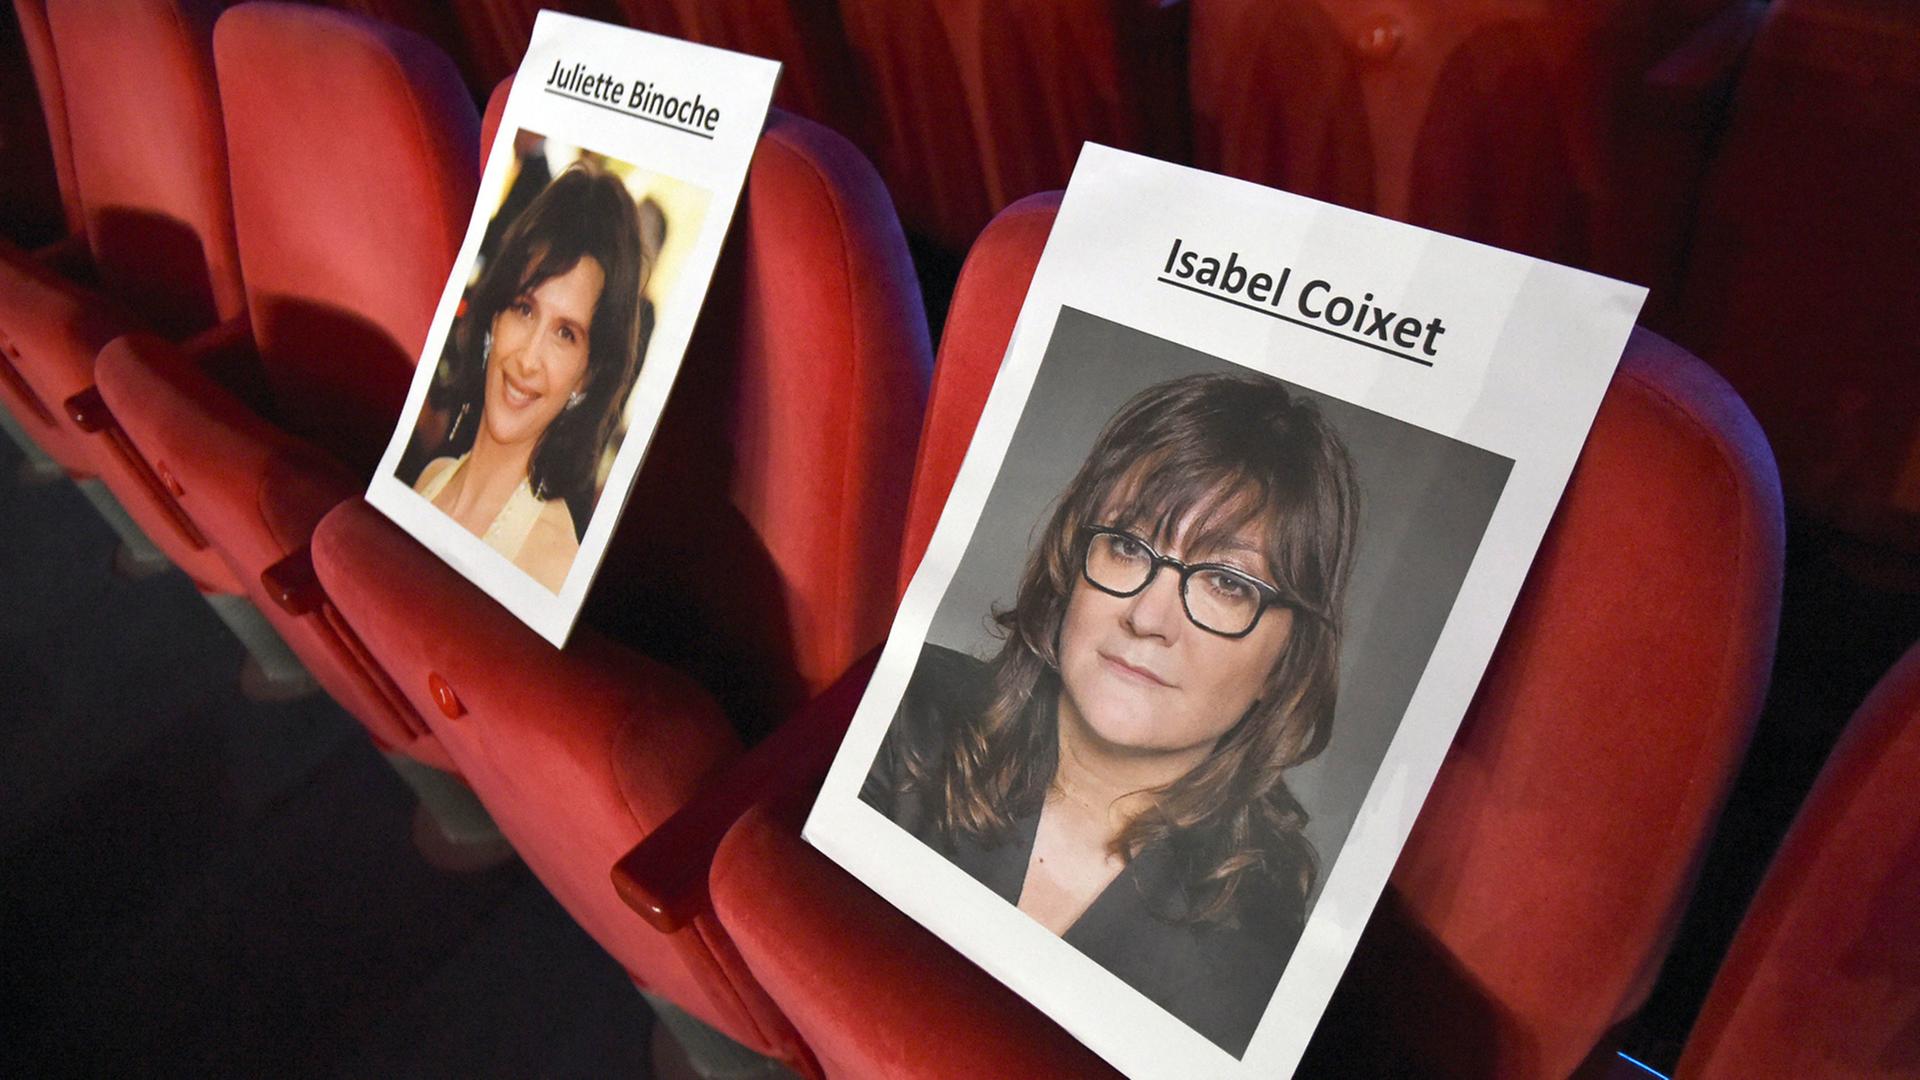 Fotos der spanischen Regisseurin Isabel Coixet (rechts) und der französischen Schauspielerin Juliette Binoche stehen im Berlinale Palast in Berlin auf Kinosesseln.